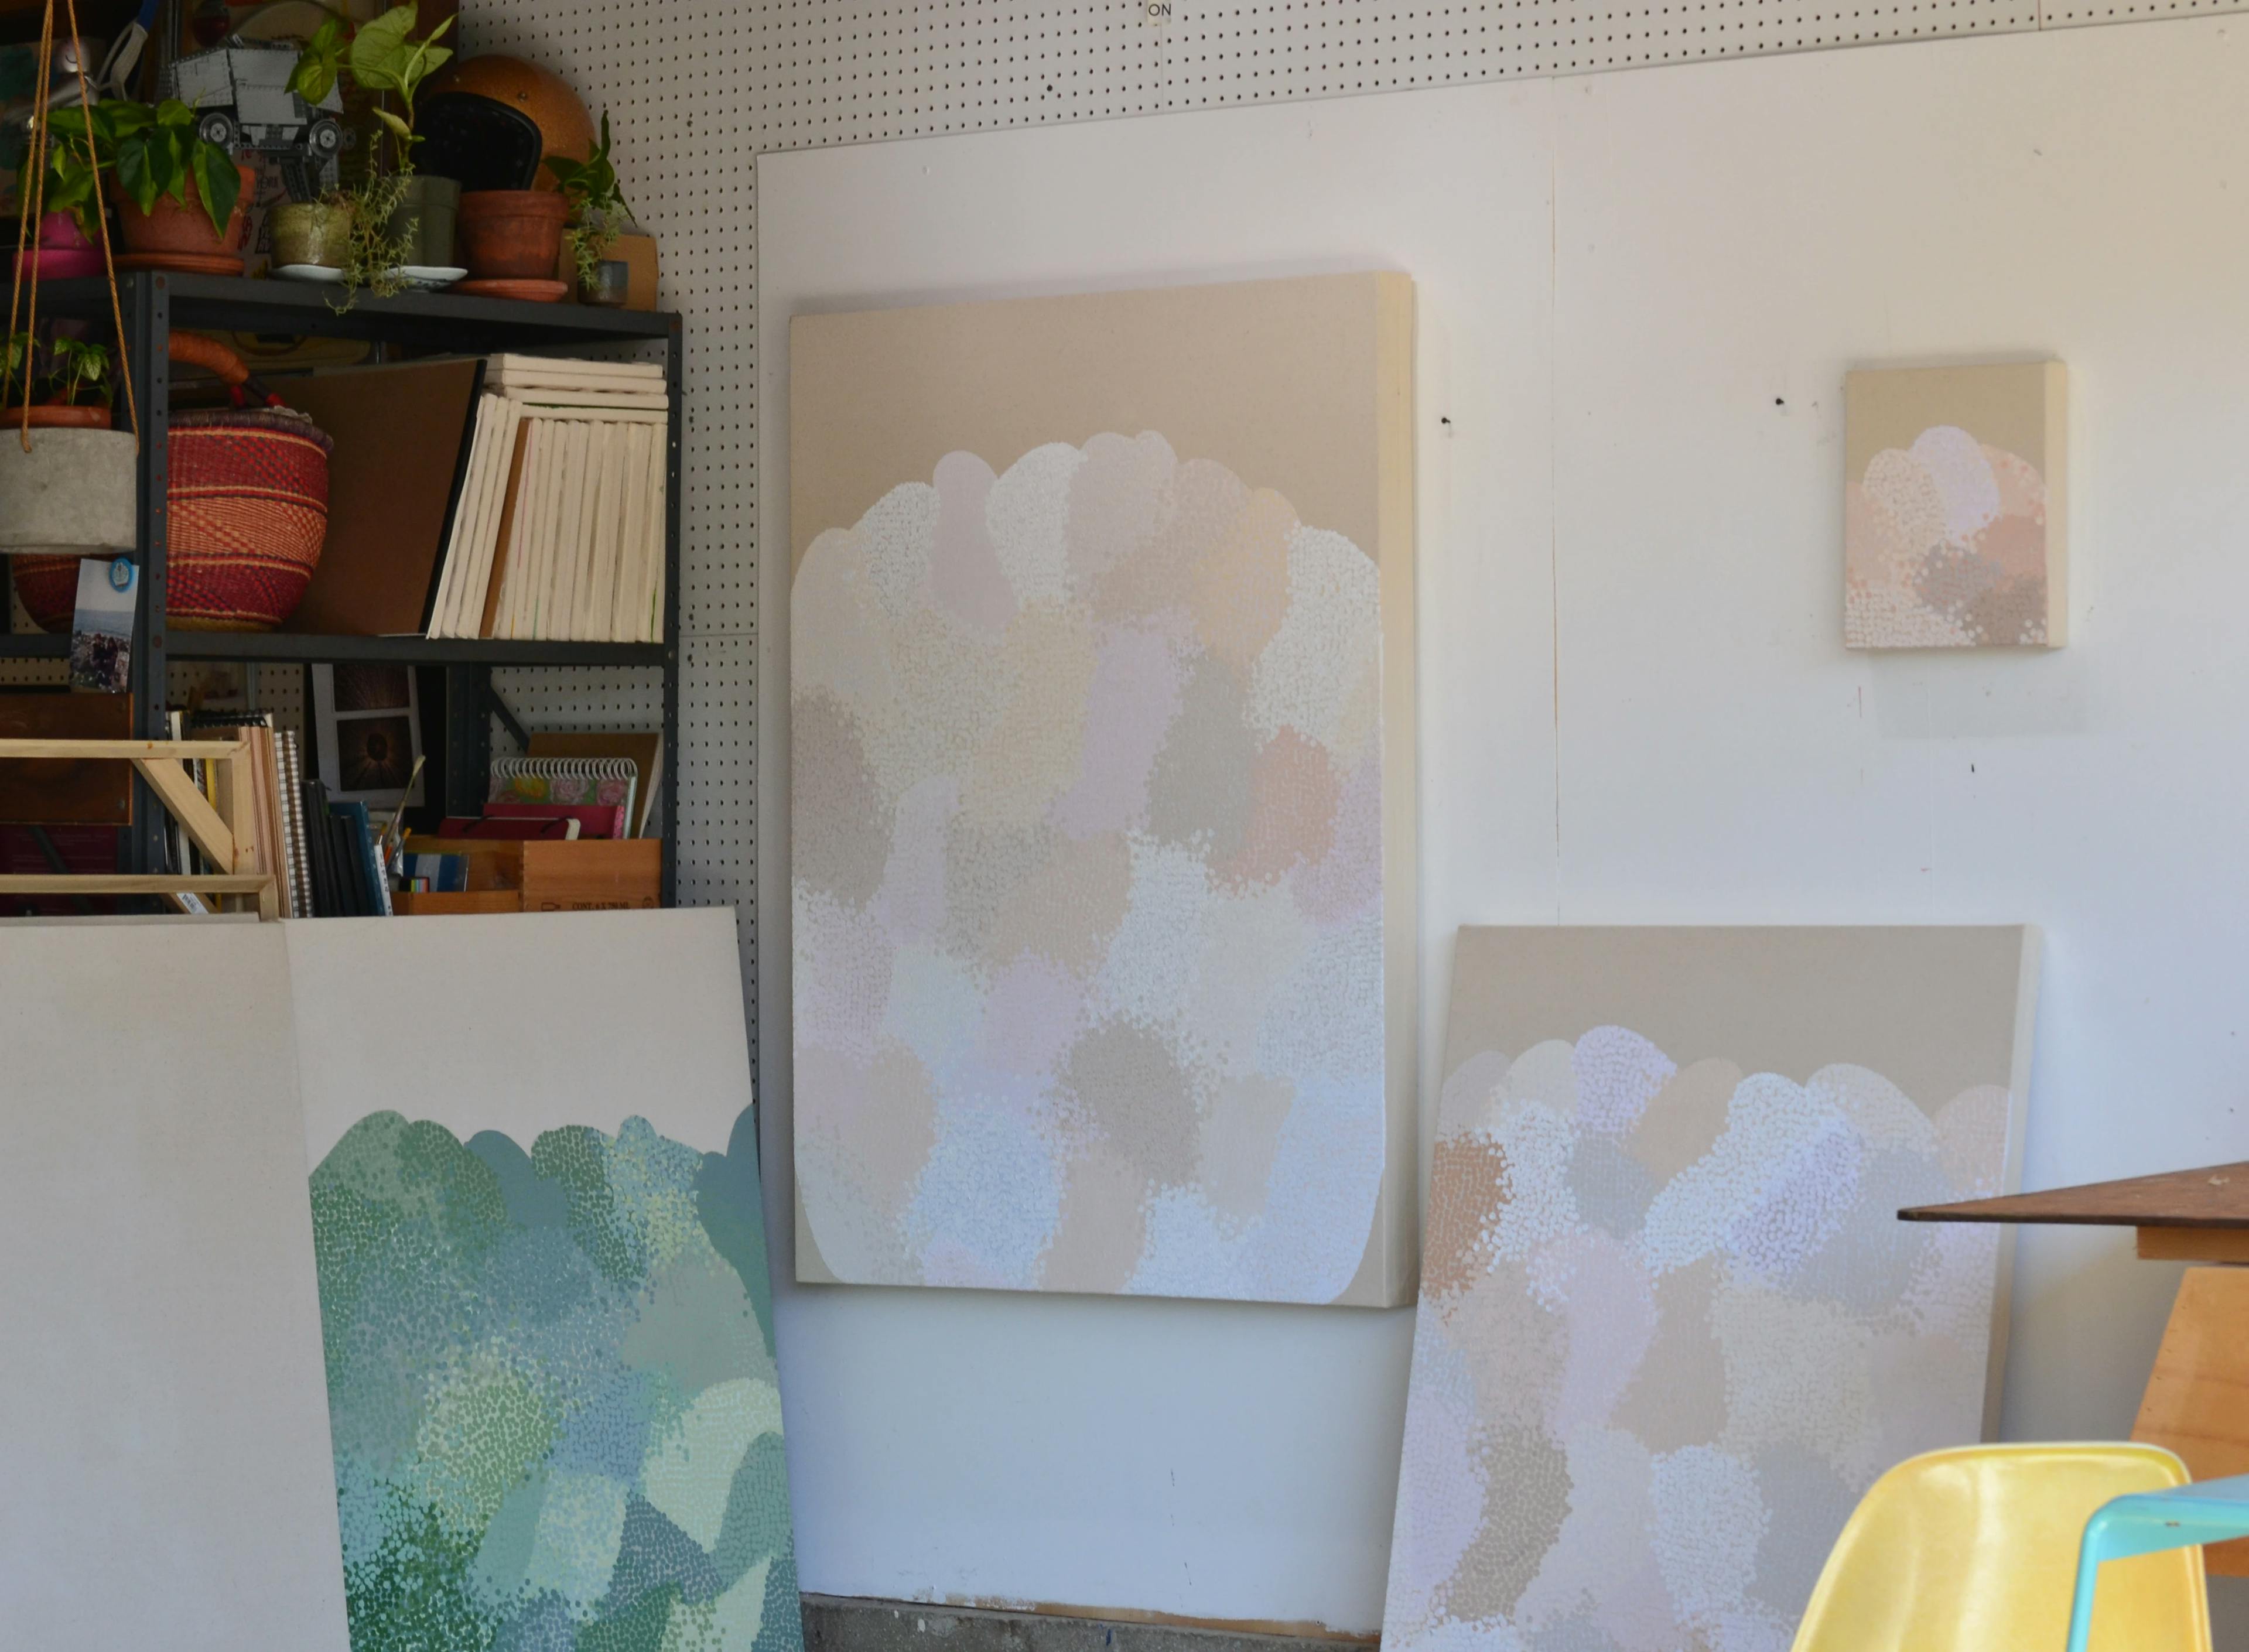 Neutral dot paintings on the wall at Misato Suzuki's studio.